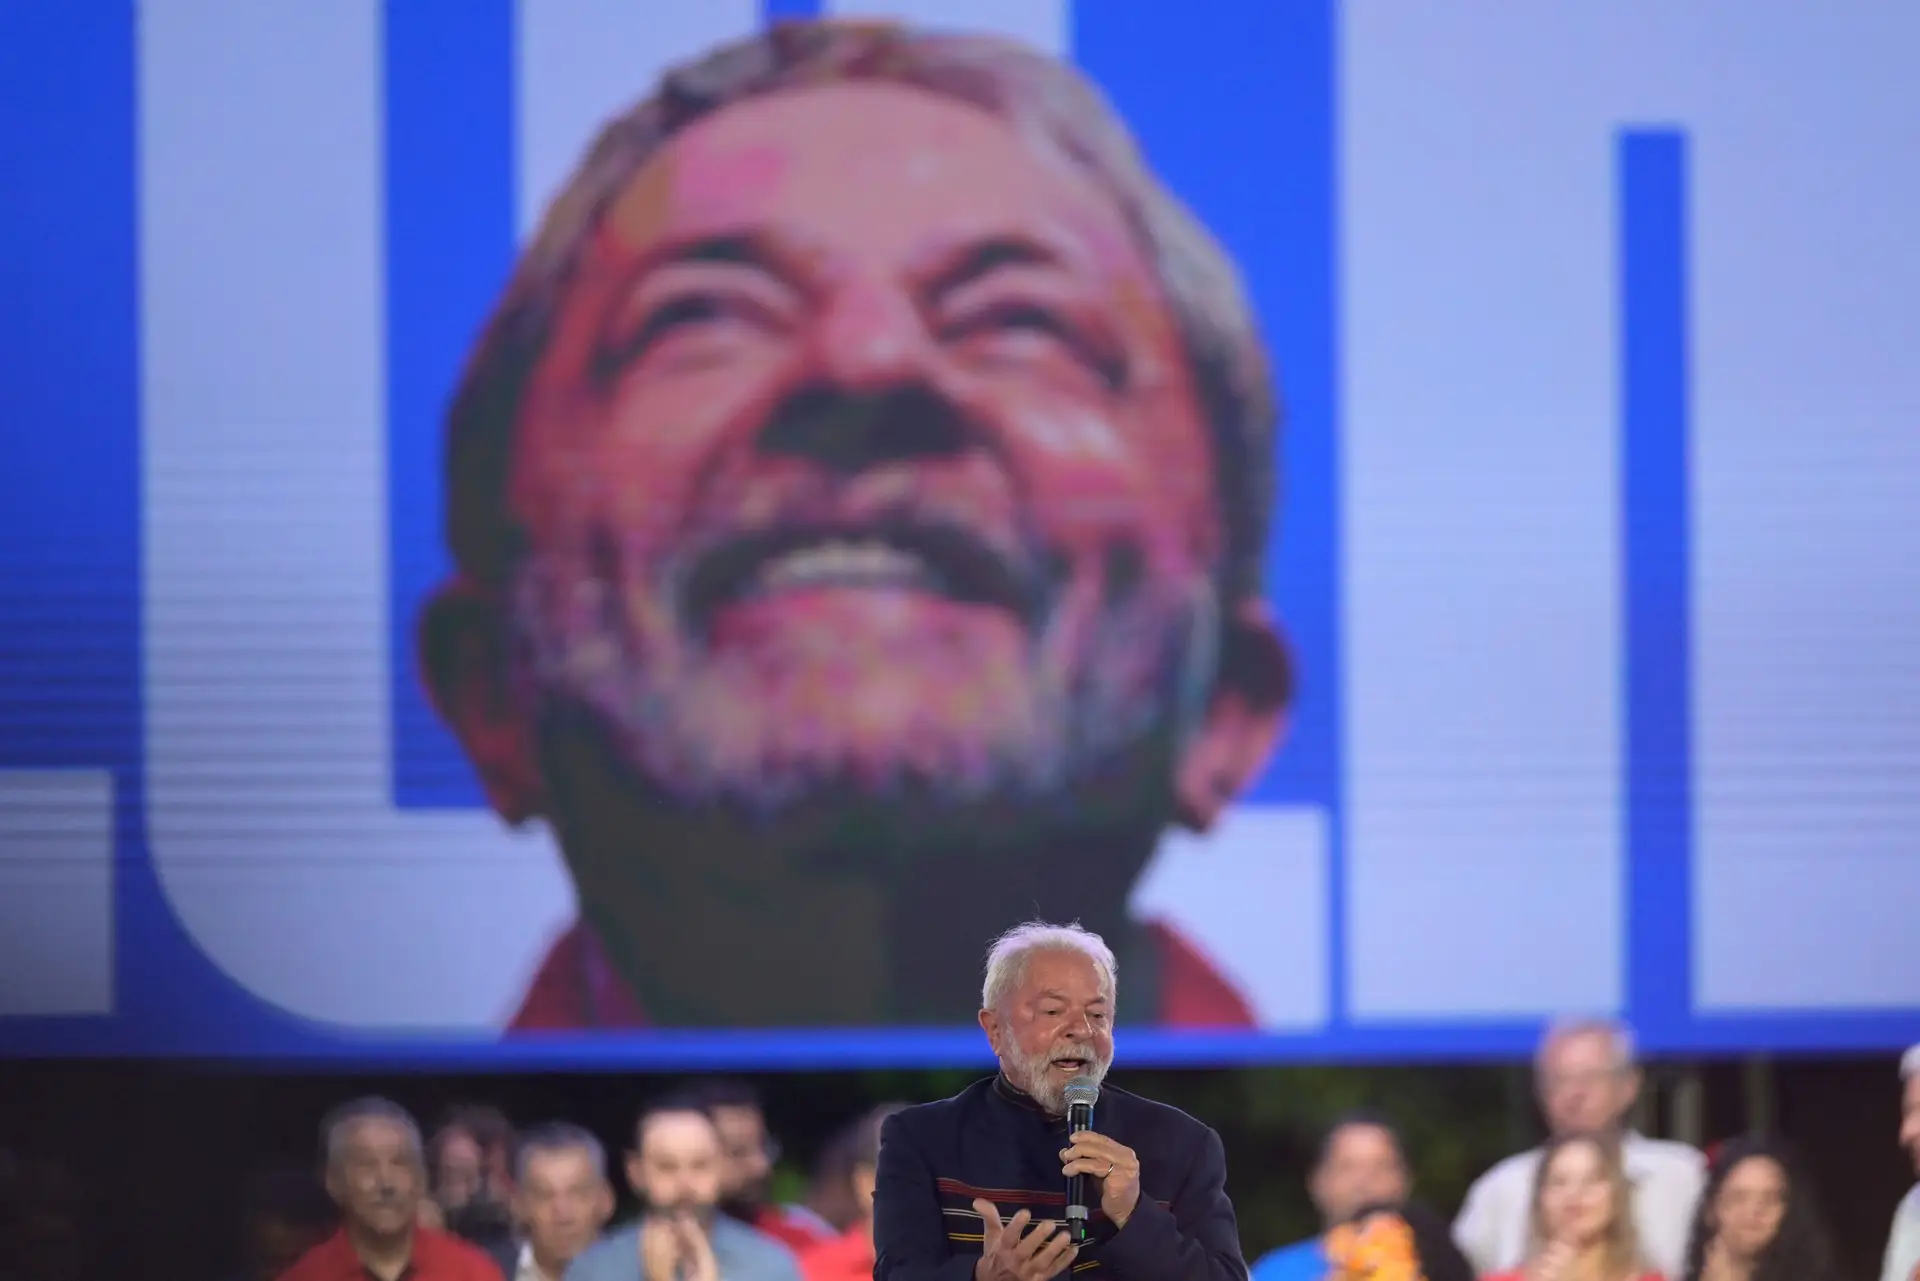 Lula com 50% das intenções de voto, eleições podem não ficar decididas na primeira volta